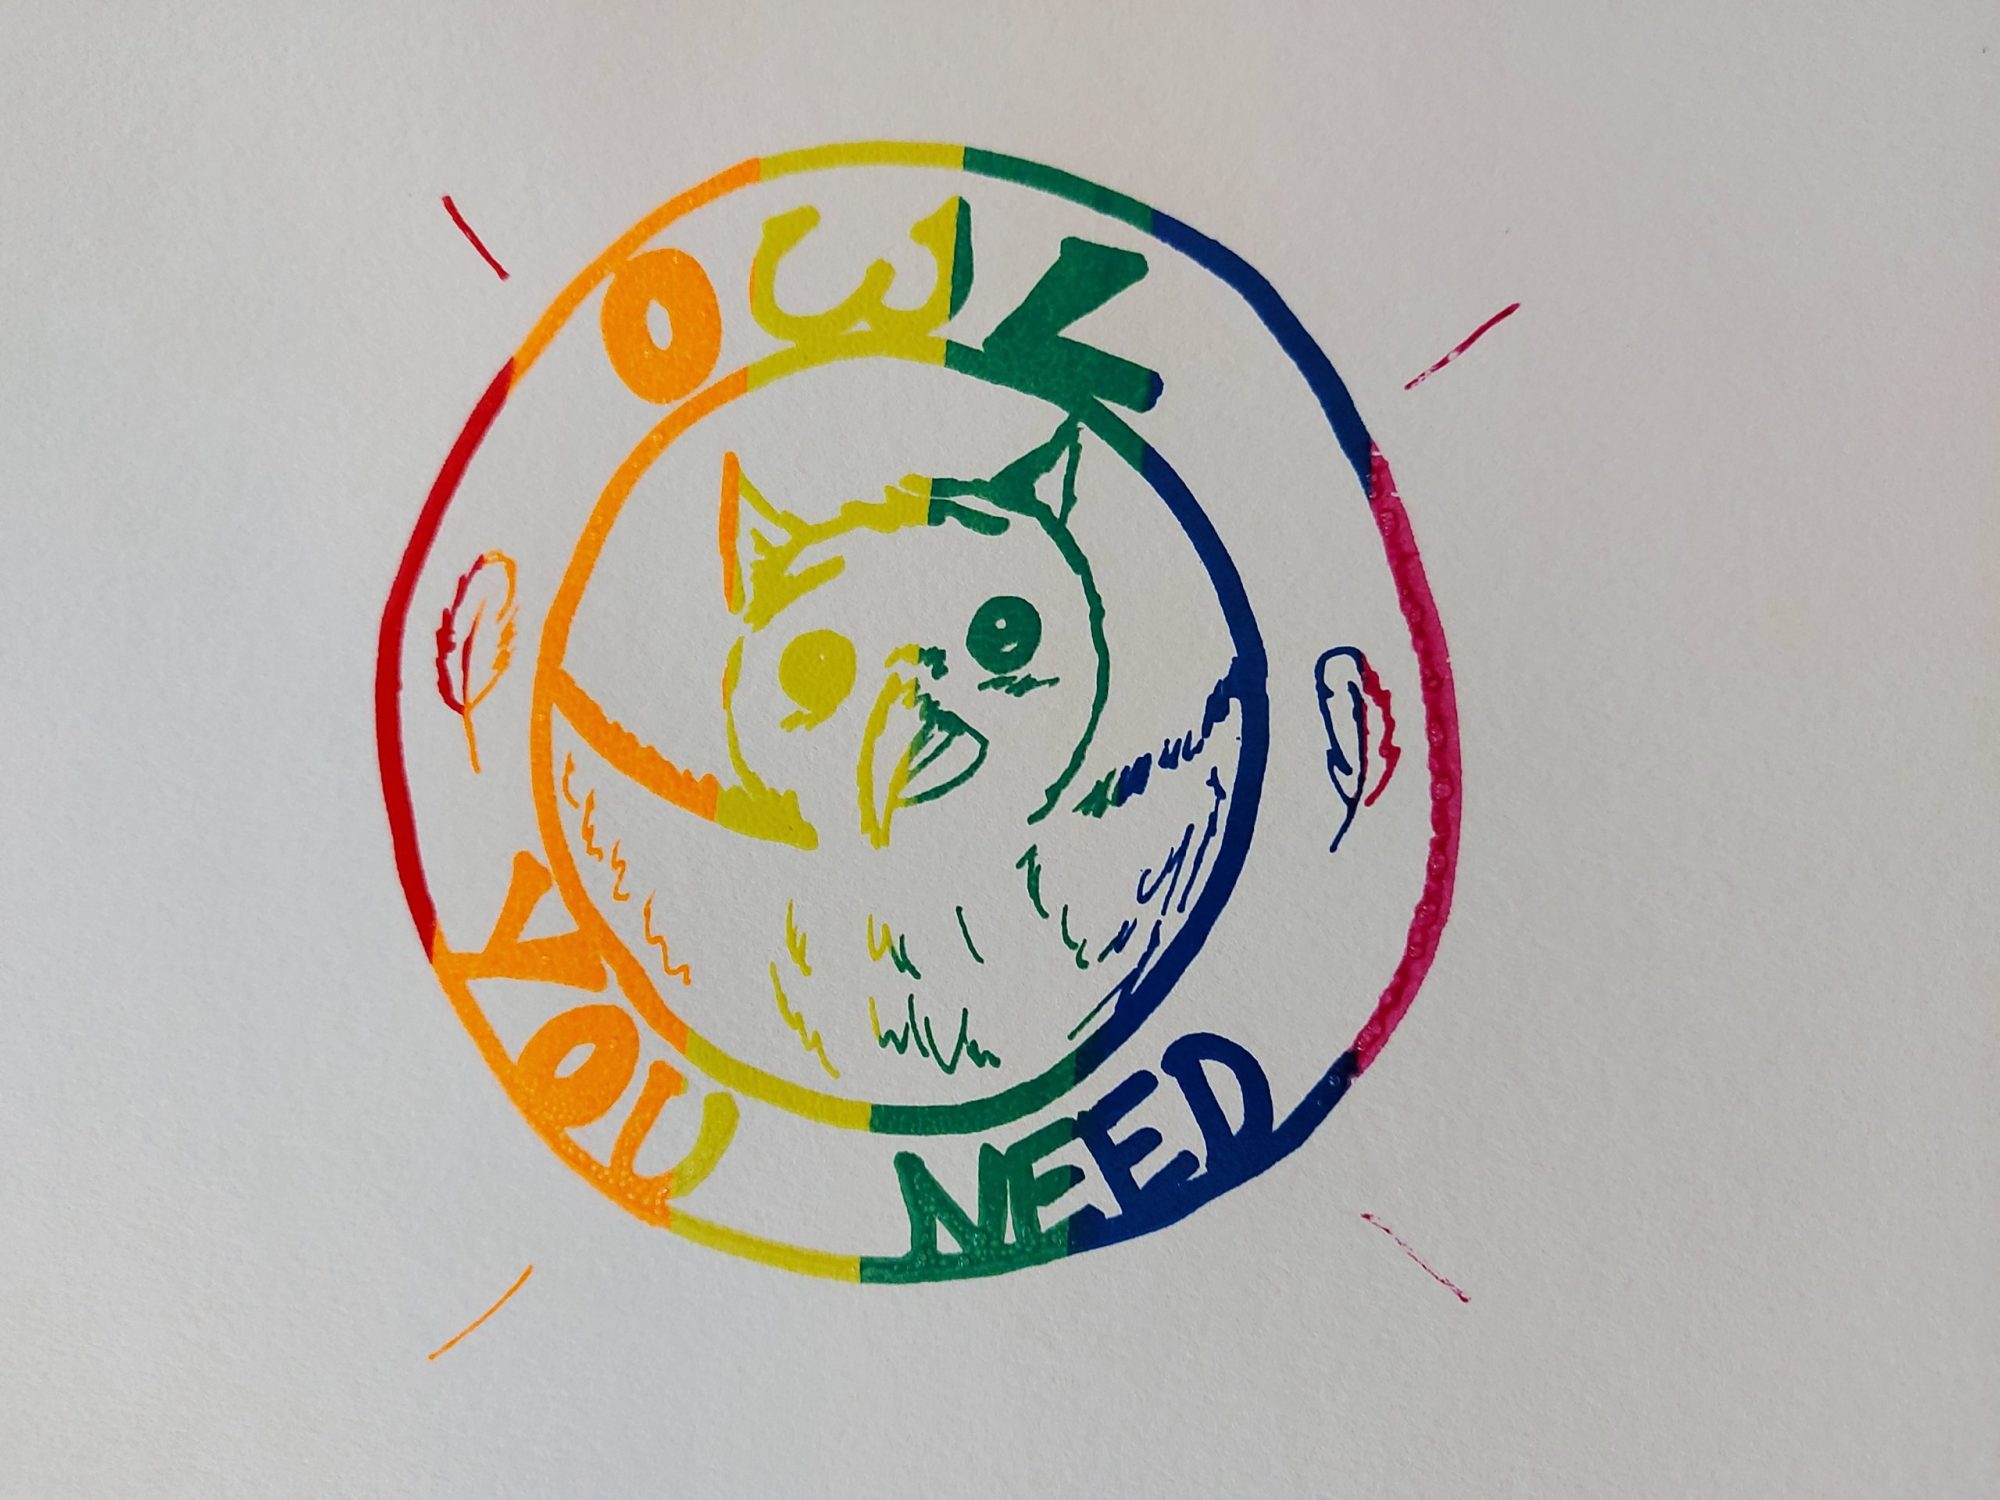 Buntes Eulen Logo mit dem Spruch "Owl you need"